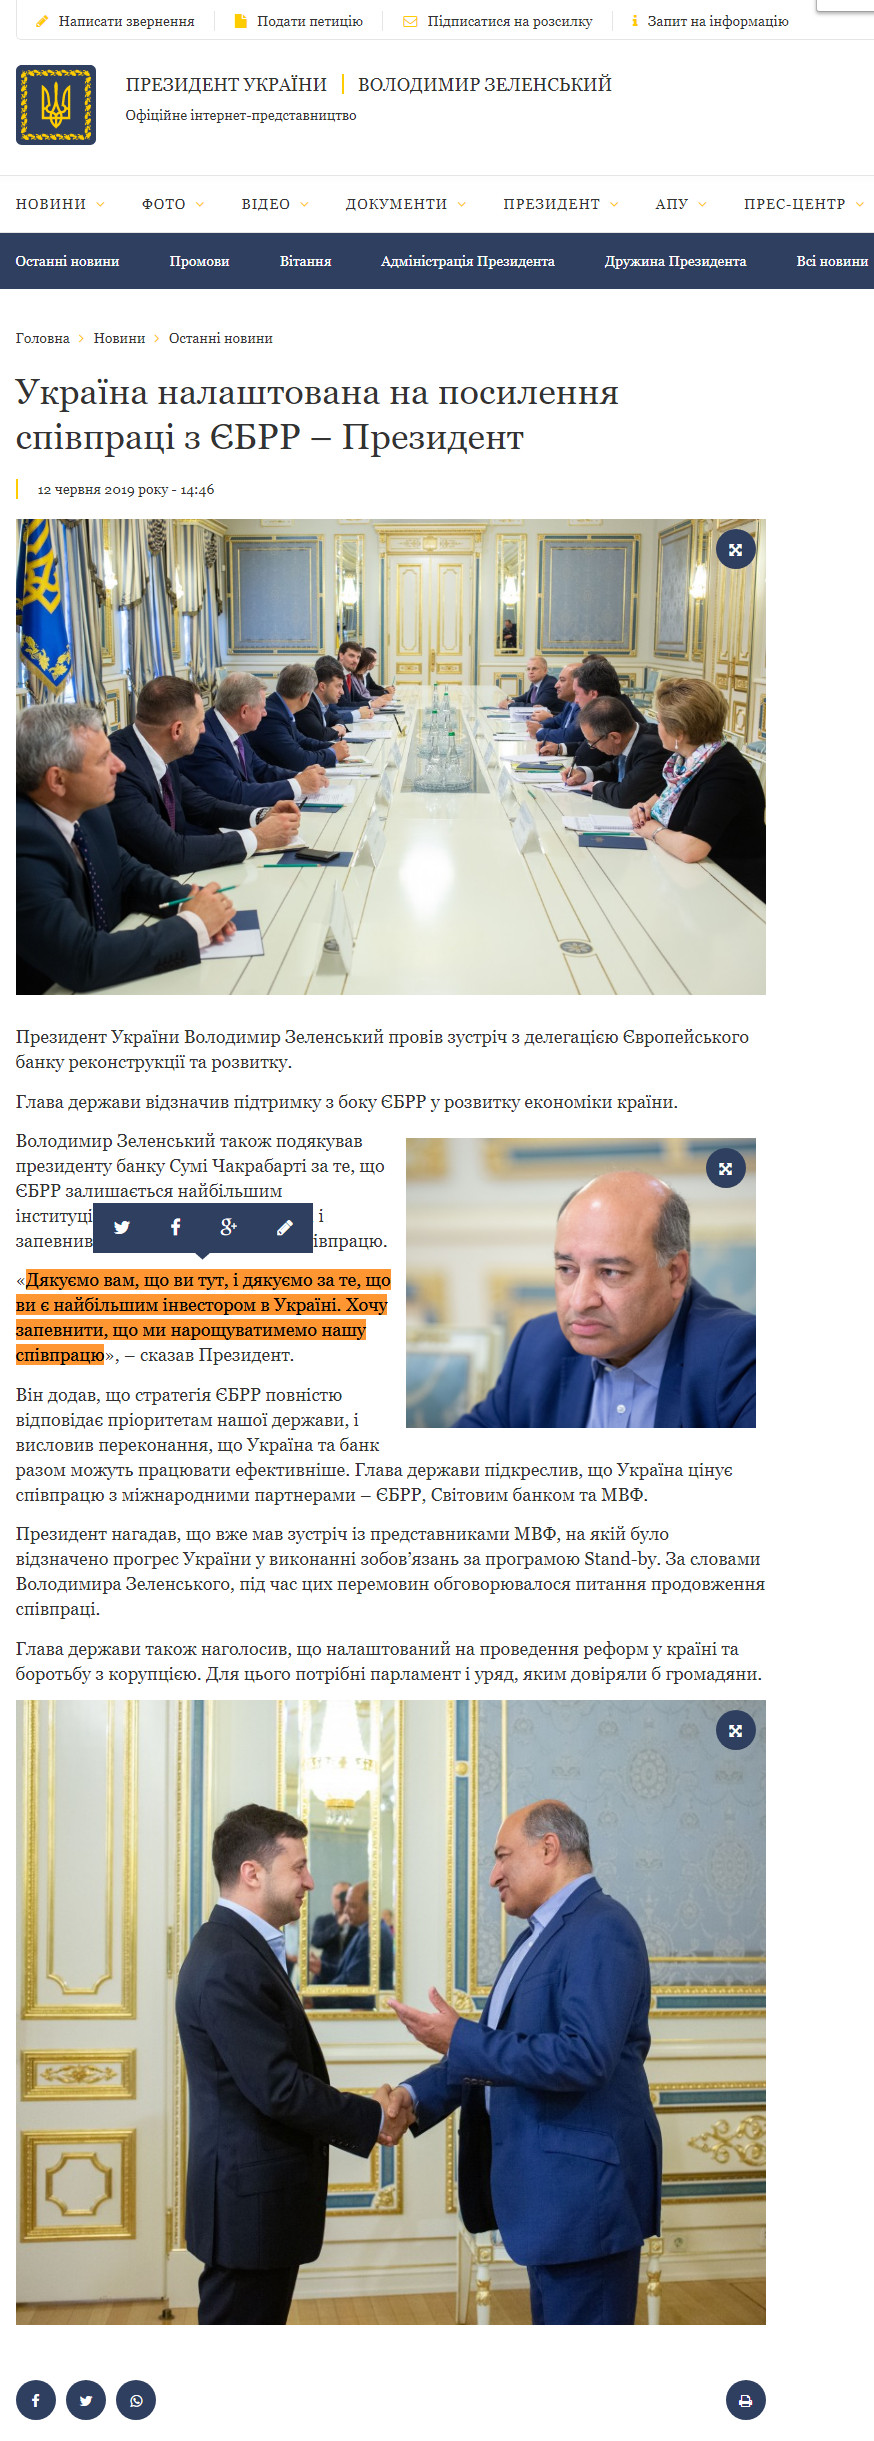 https://www.president.gov.ua/news/ukrayina-nalashtovana-na-posilennya-spivpraci-z-yebrr-prezid-55857